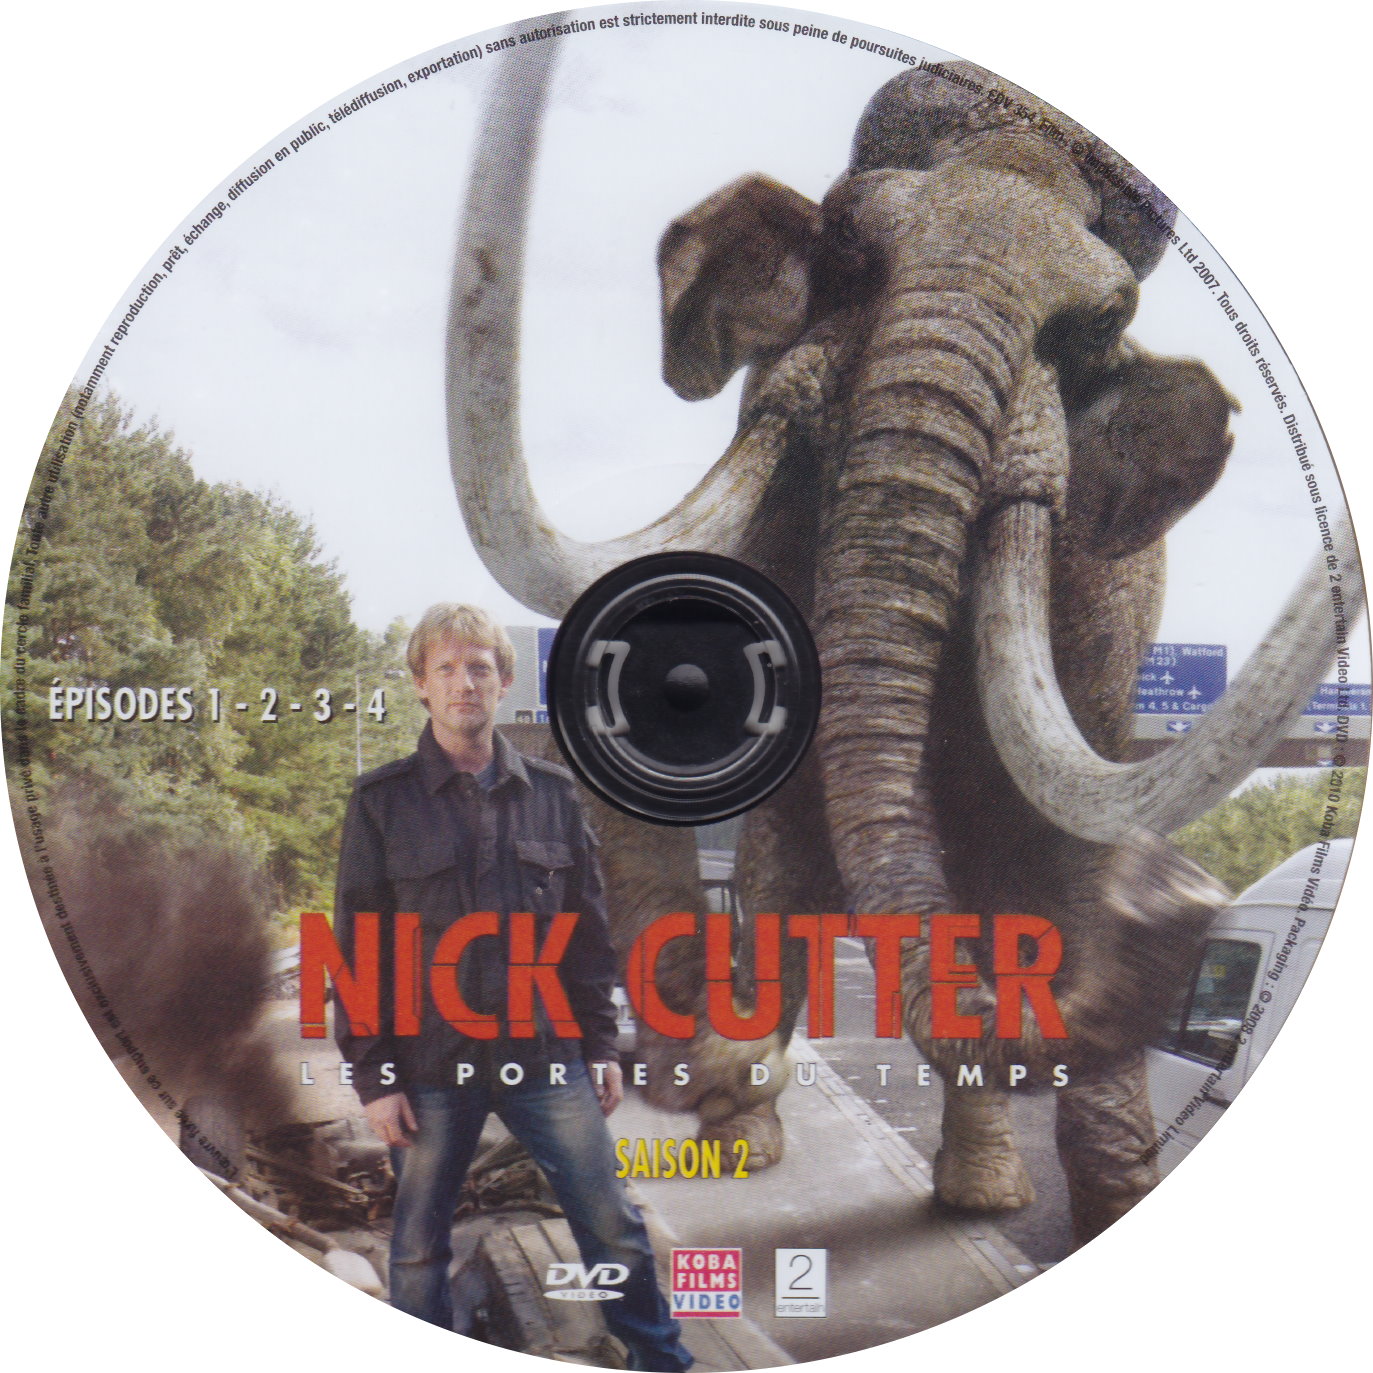 Nick Cutter Les portes du temps Saison 2 DISC 1